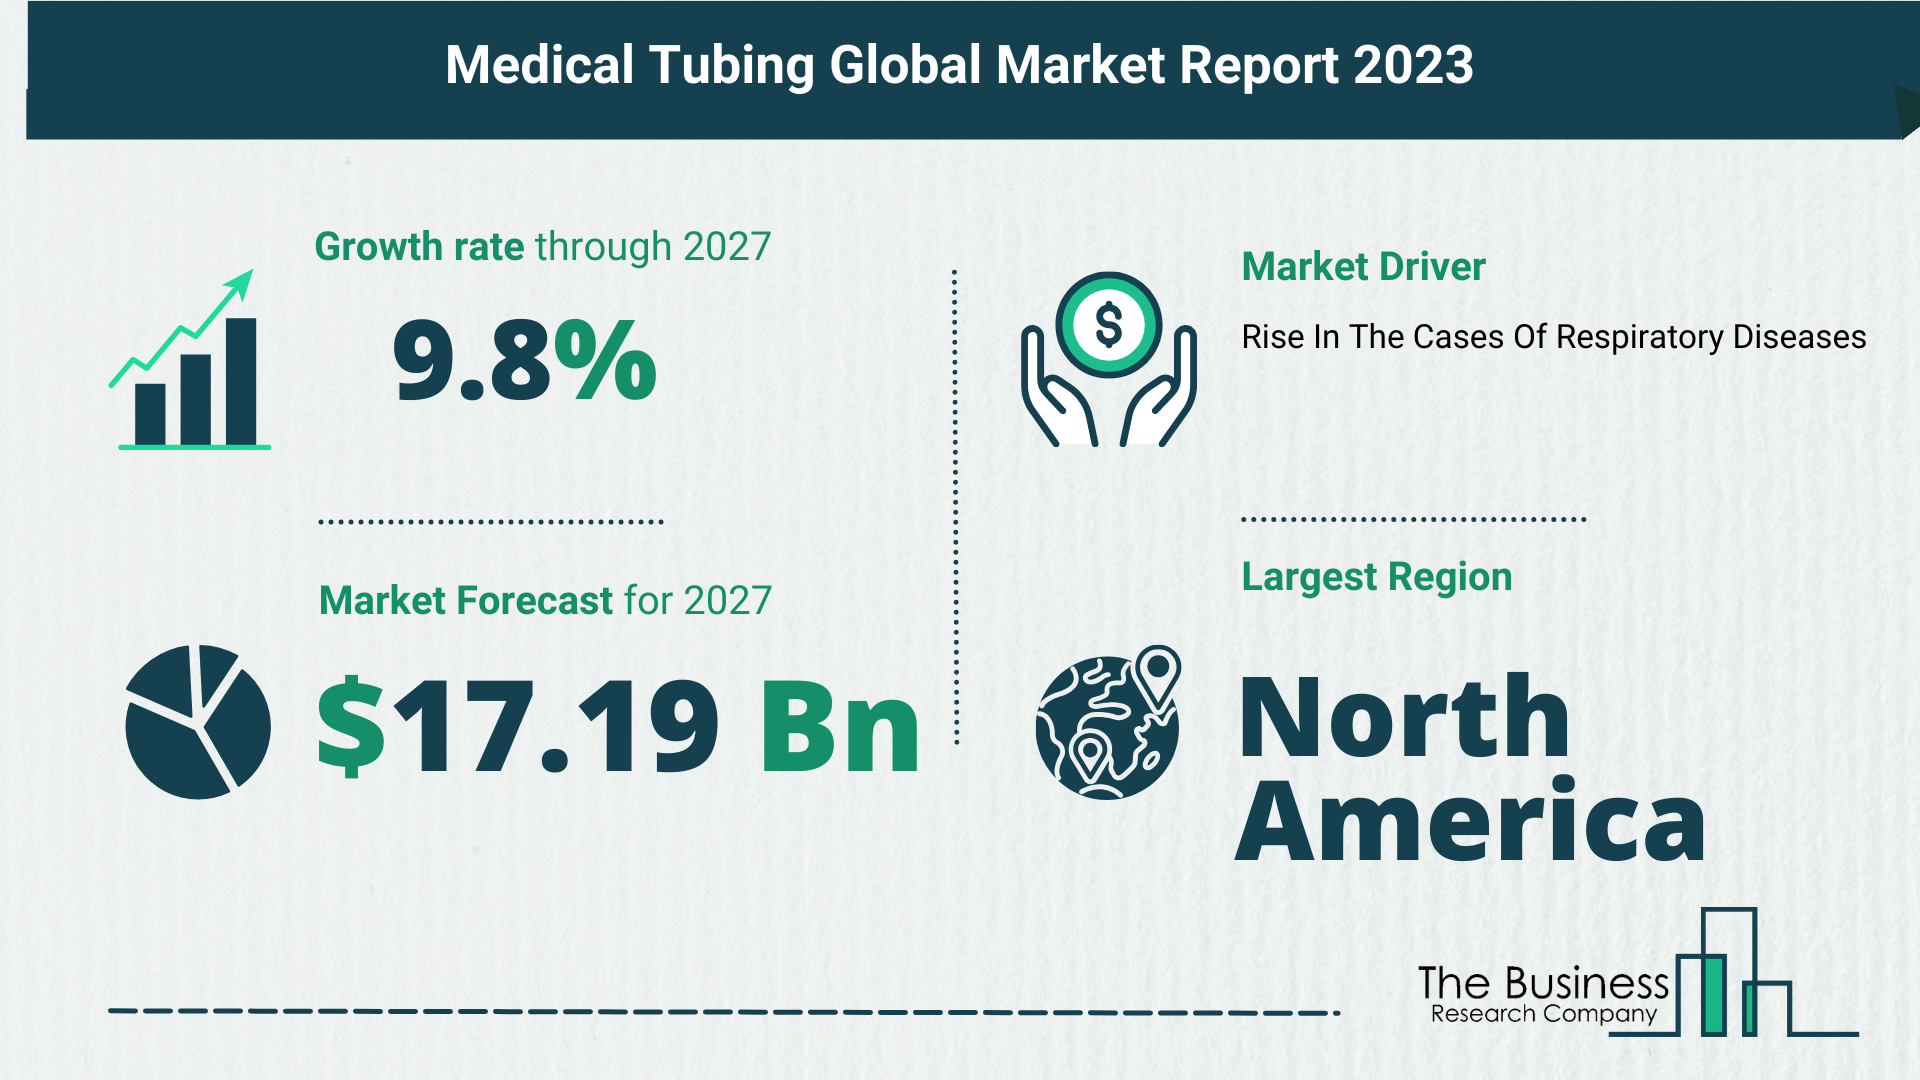 Global Medical Tubing Market Size